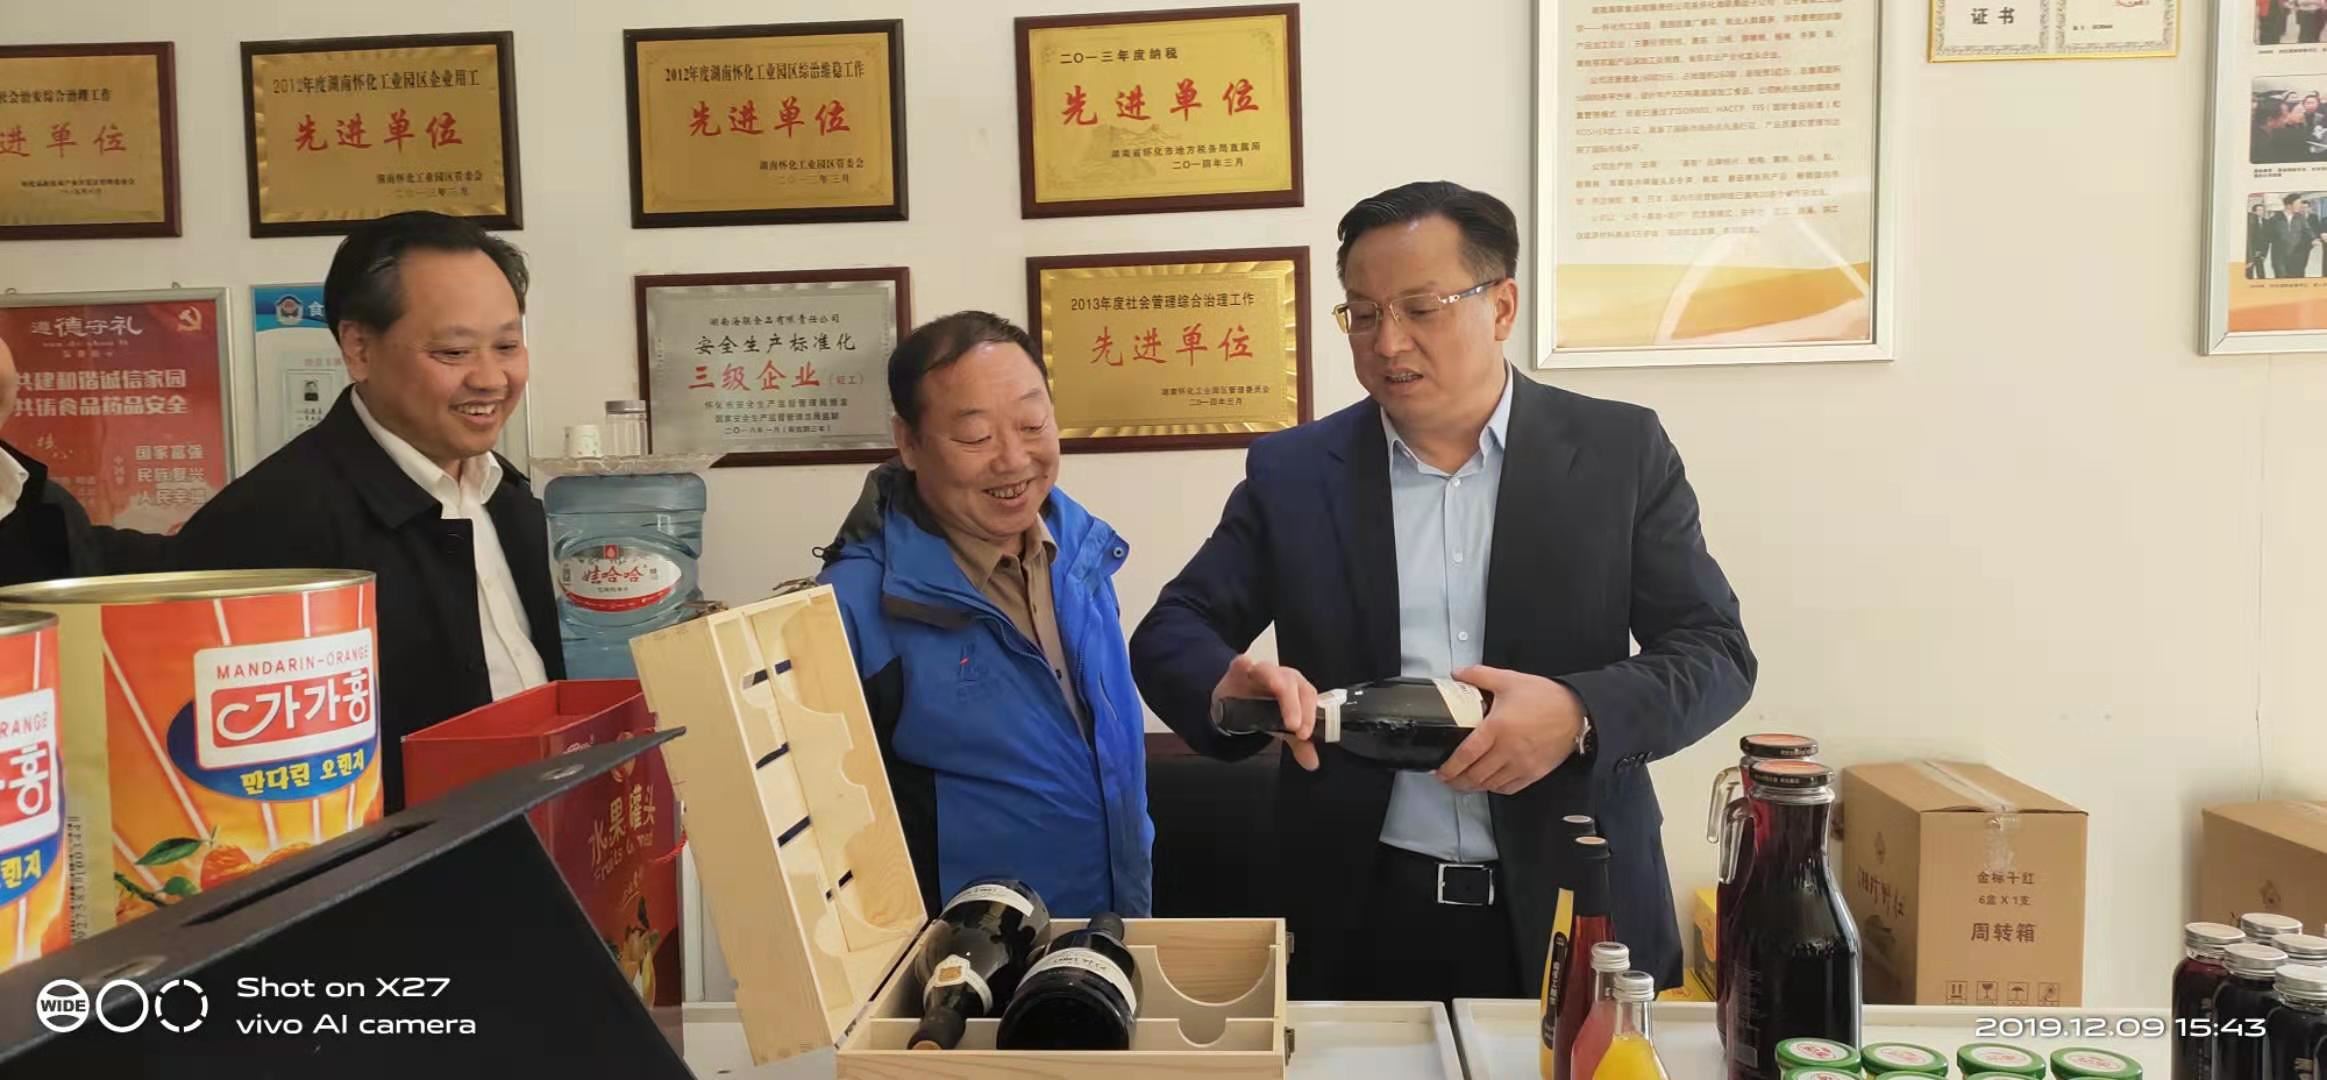 2019年12月9日怀化市委副书记市长雷绍业、副市长姚述铭到永利皮带官网调研指导工作。